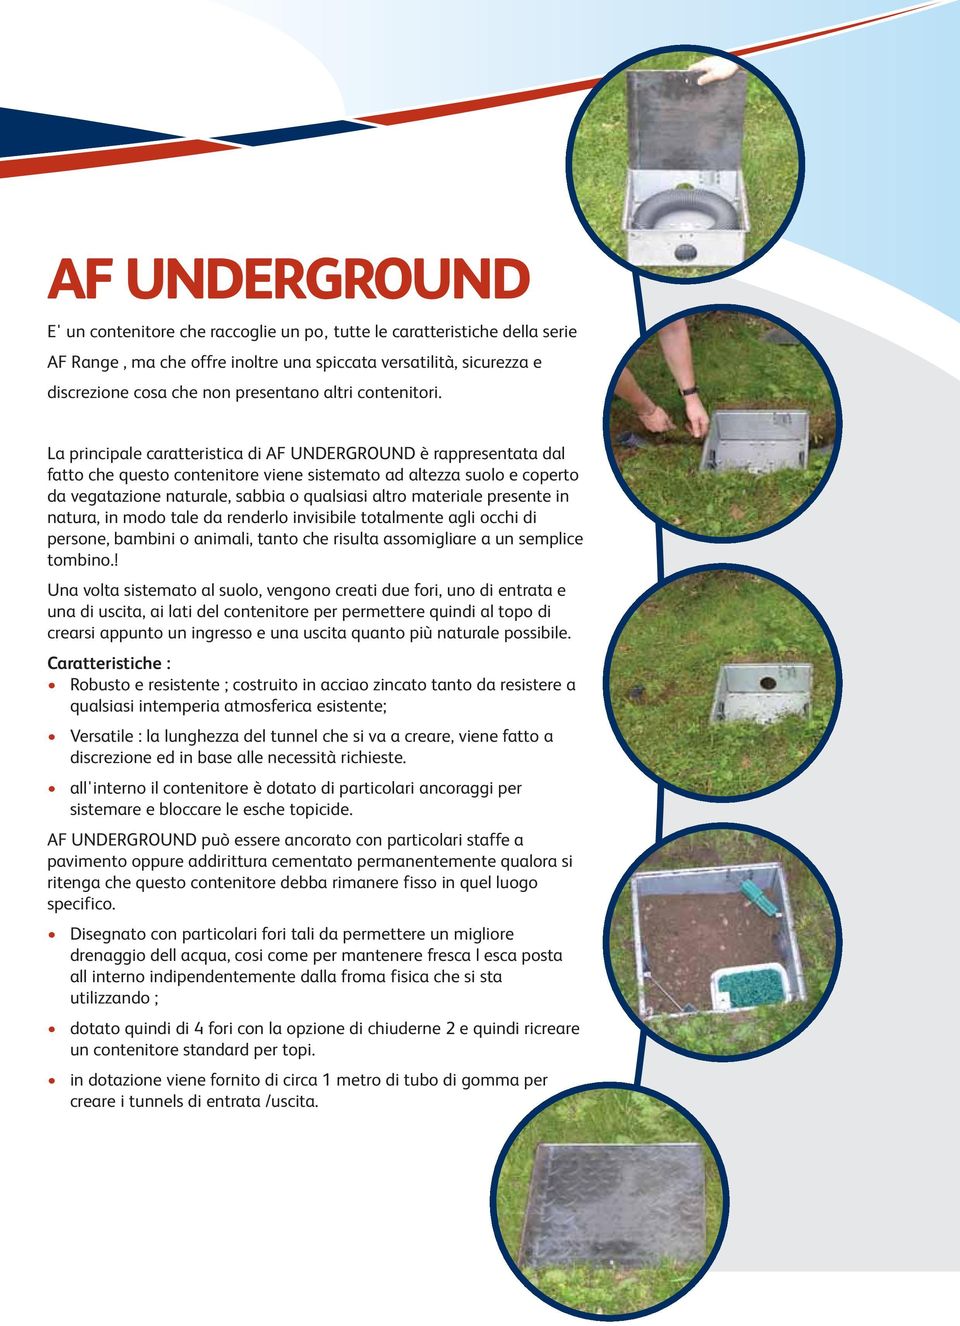 La principale caratteristica di AF UNDERGROUND è rappresentata dal fatto che questo contenitore viene sistemato ad altezza suolo e coperto da vegatazione naturale, sabbia o qualsiasi altro materiale